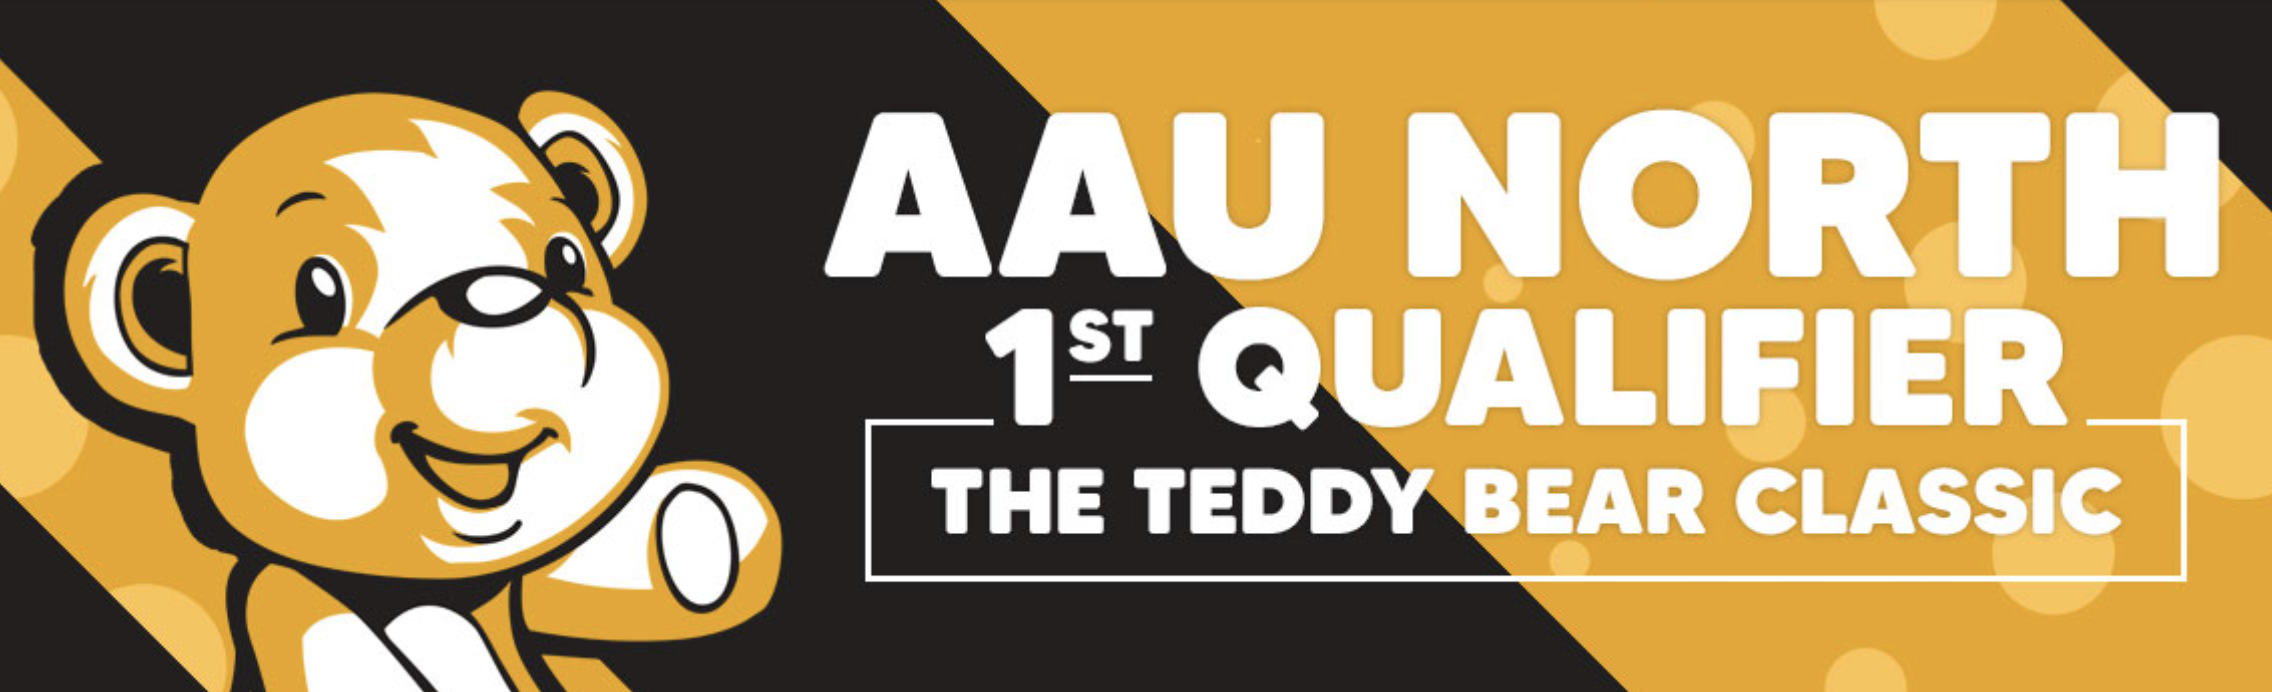 AAU North 1st Qualifier